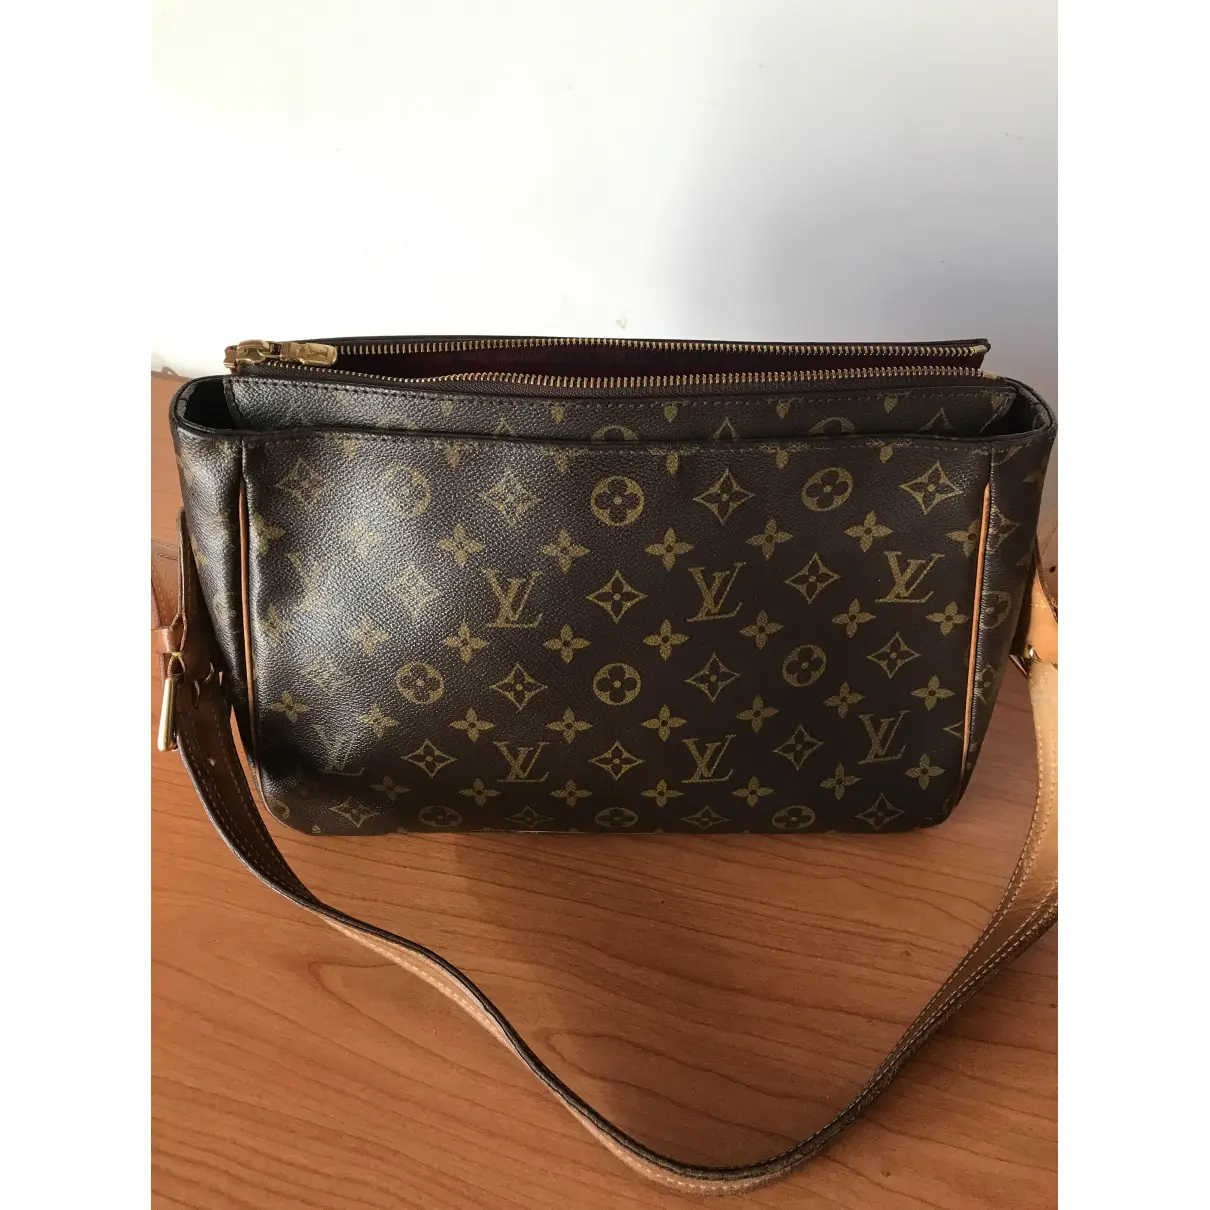 Buy Louis Vuitton Viva Cité cloth handbag online